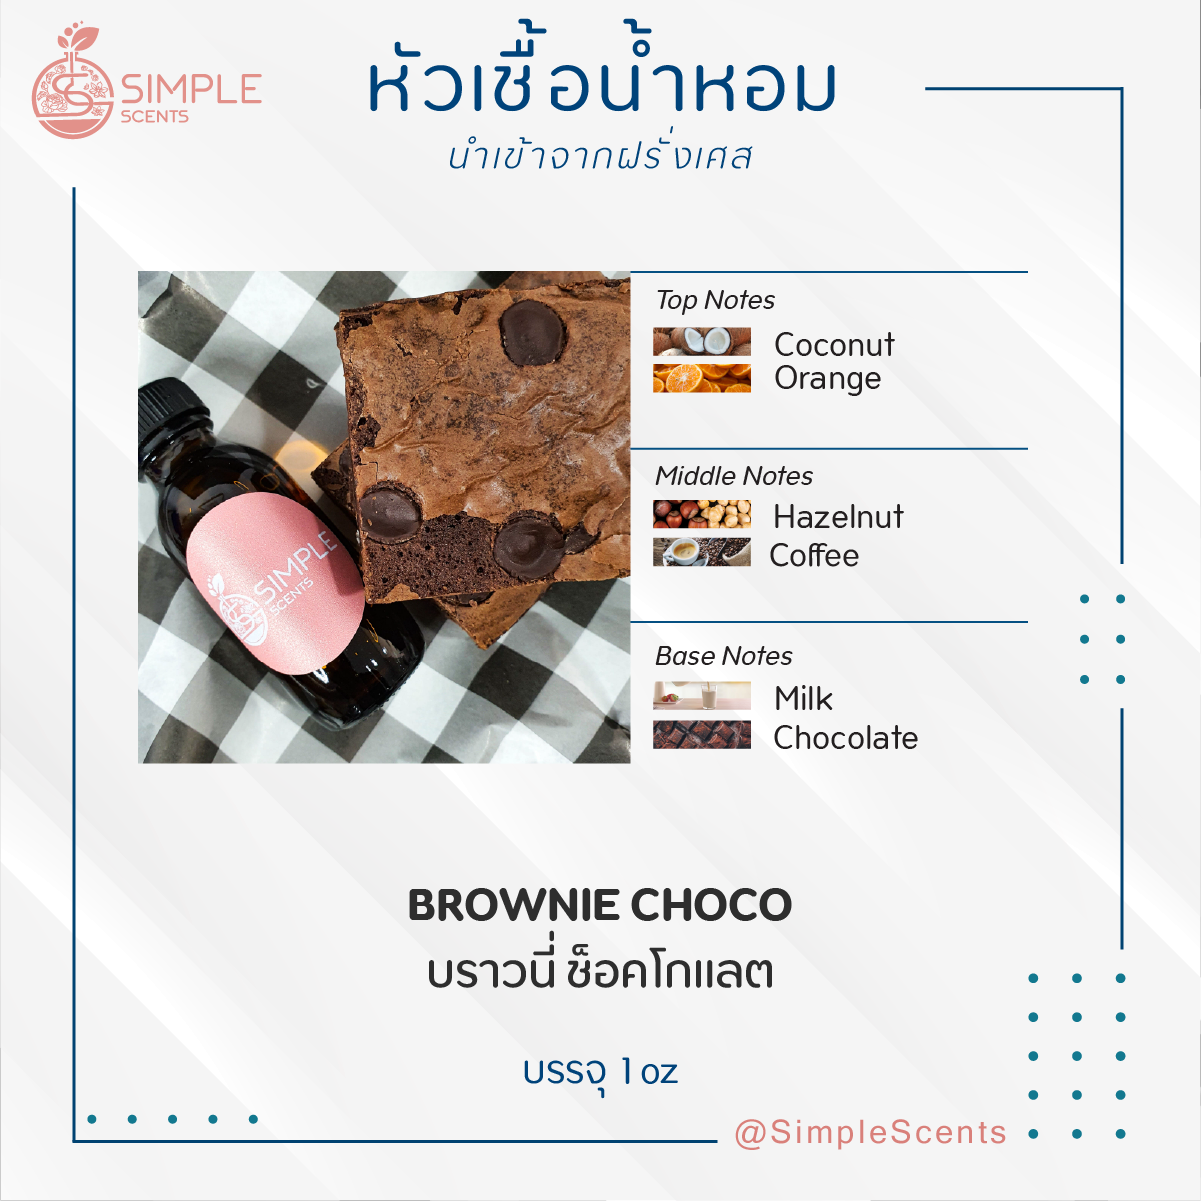 BROWNIE CHOCO / บราวนี่ ช็อคโกแลต